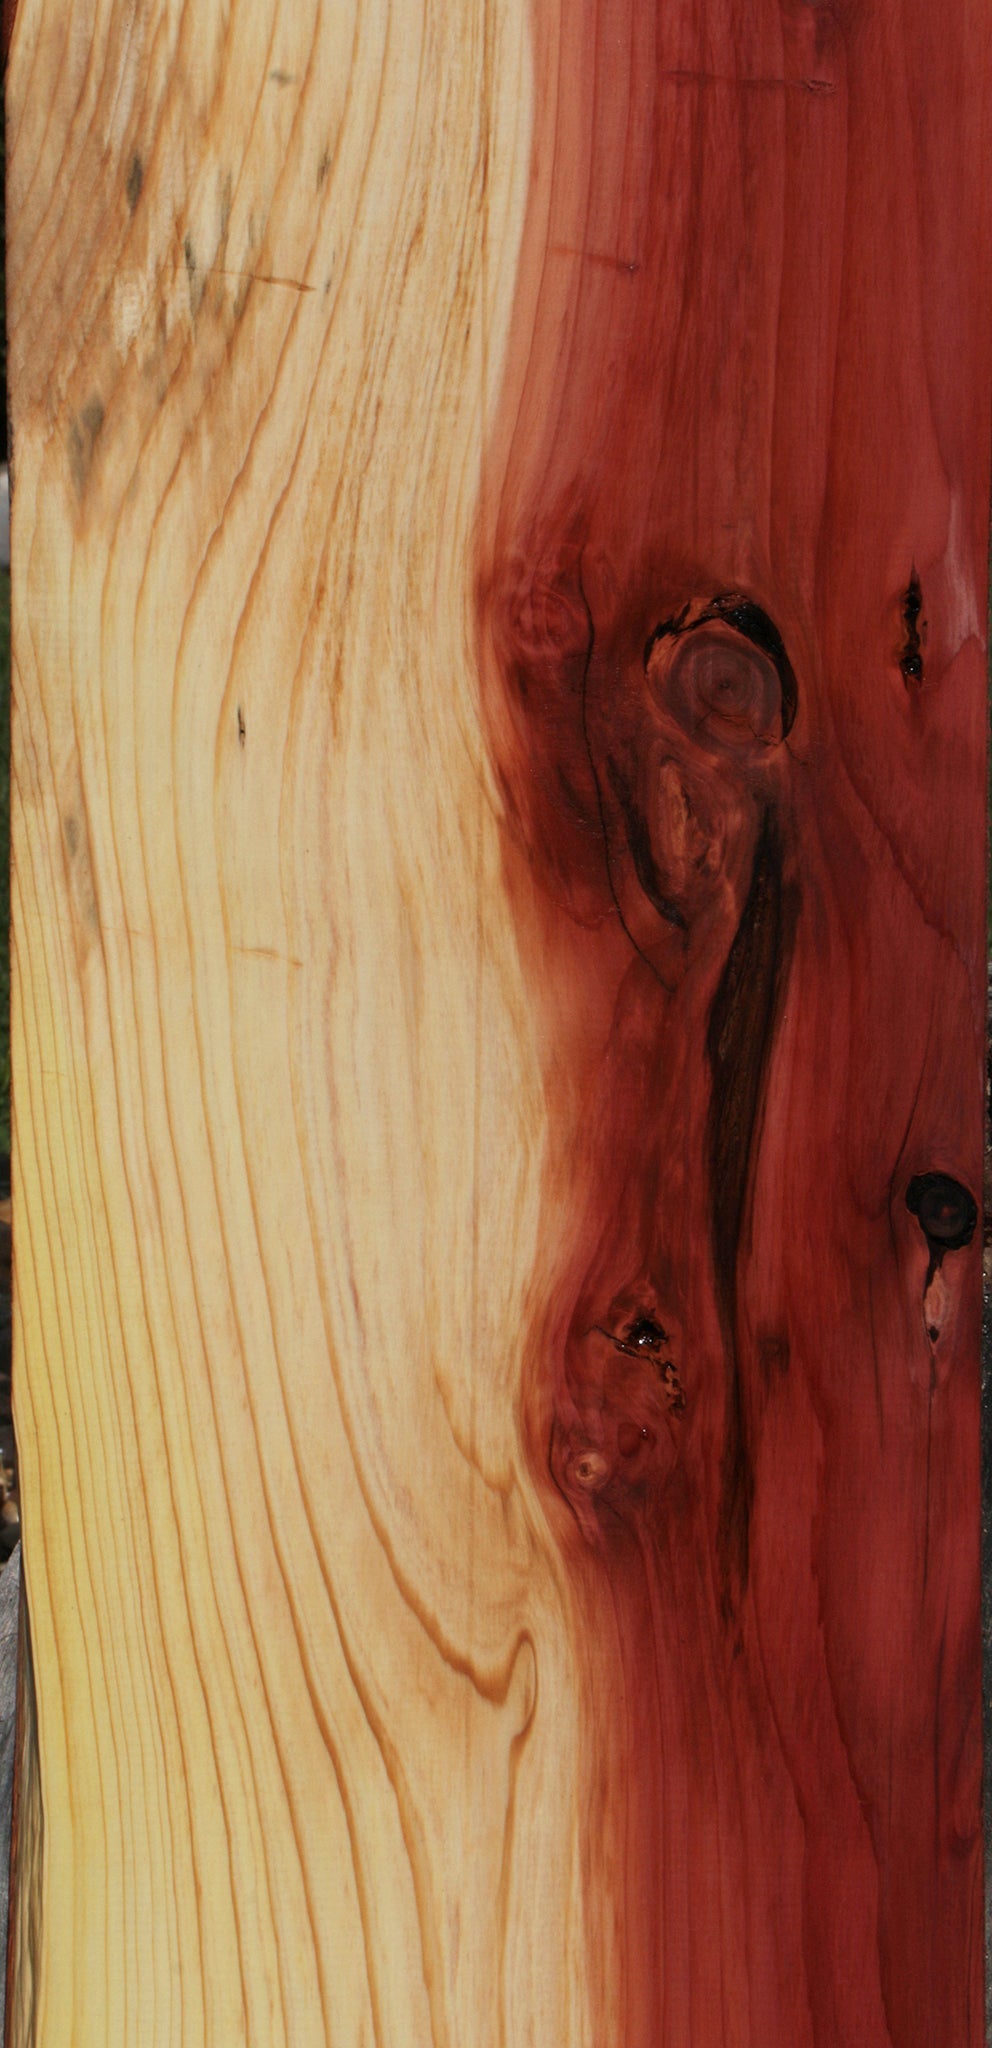 Redwood Lumber